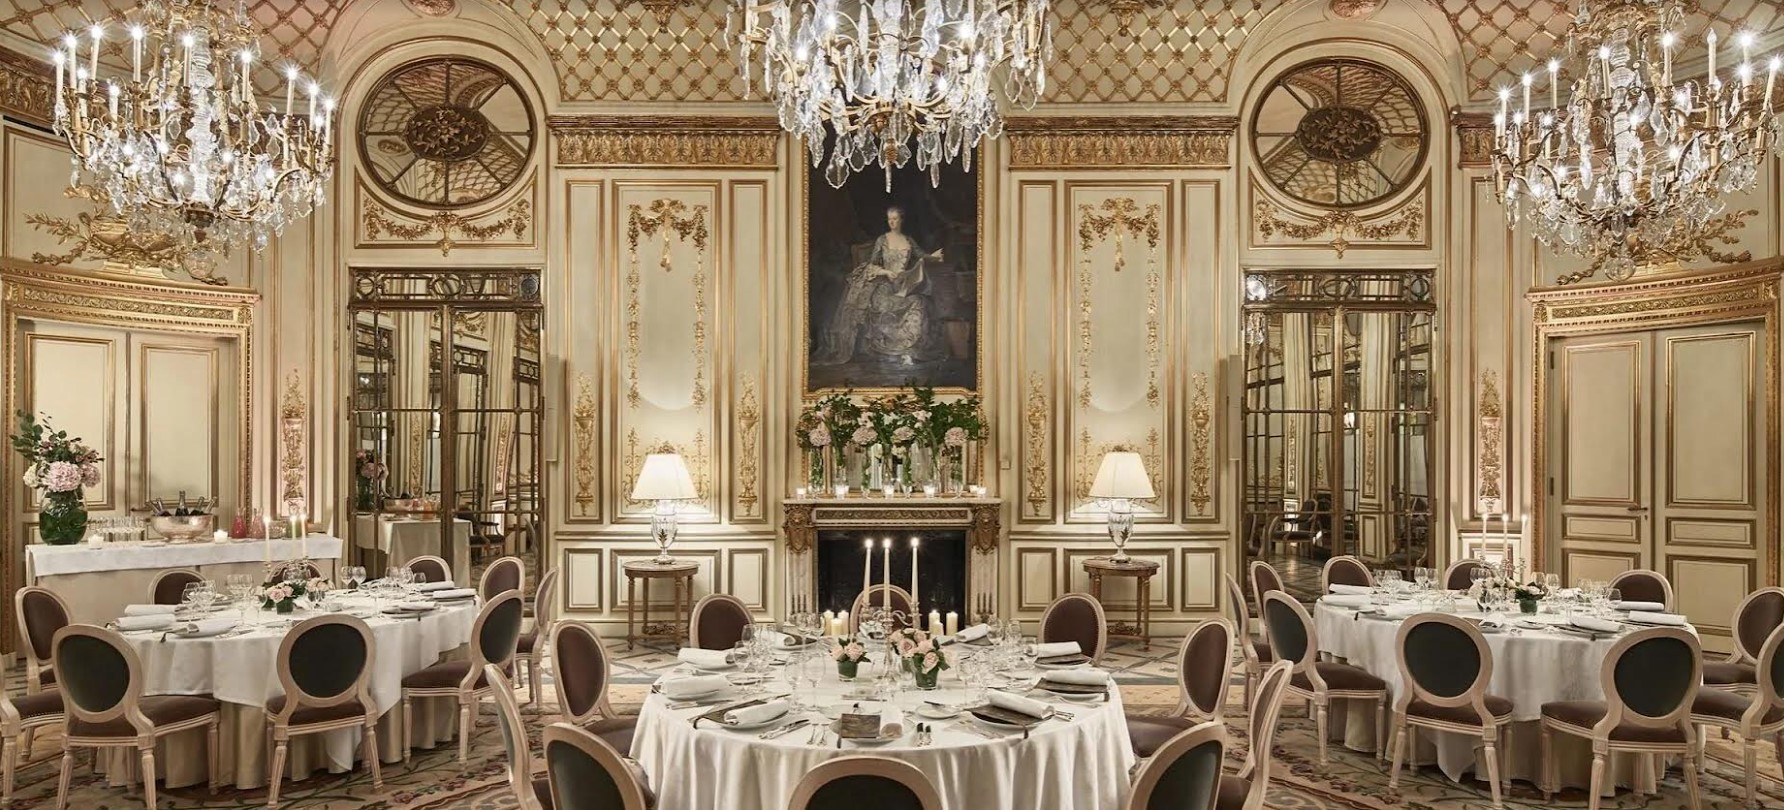 Το Salon Pompadour στο ξενοδοχείο «Le Meurice» στο Παρίσι, όπου ο Πικάσο έκανε τον πρώτο του γάμο